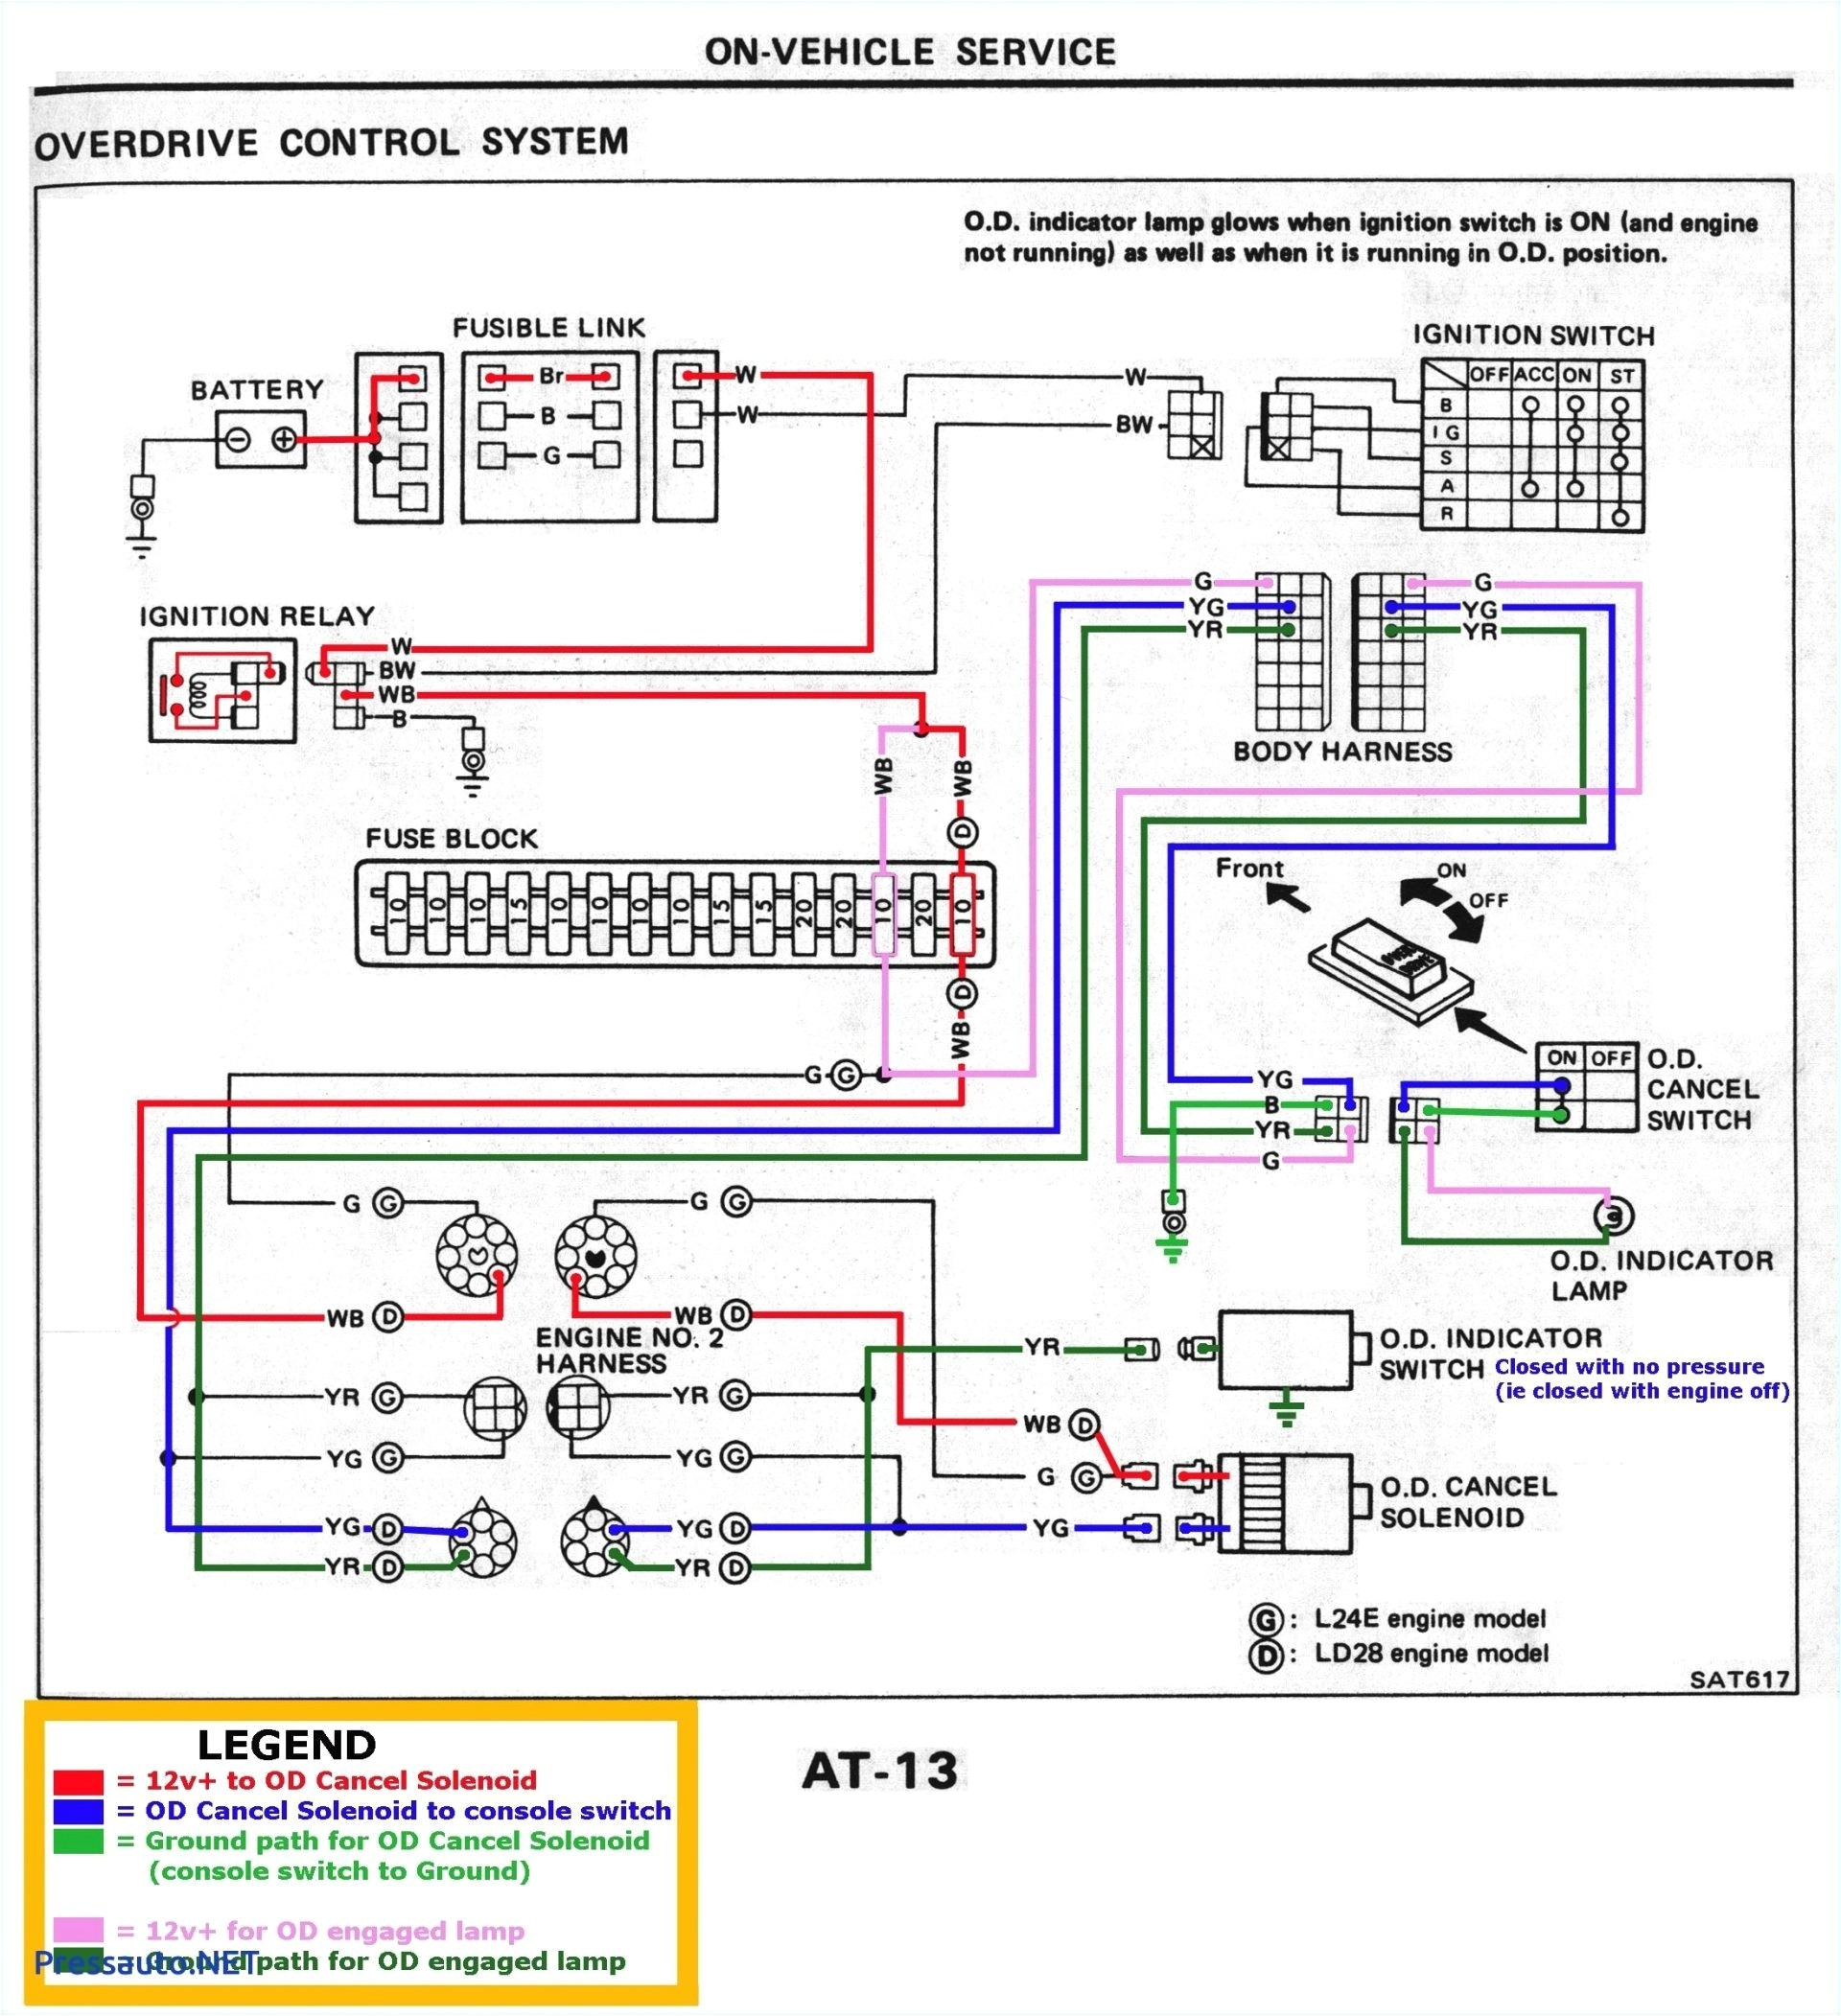 3ph Motor Wiring Diagram Weg Wiring Diagram Wiring Database Diagram